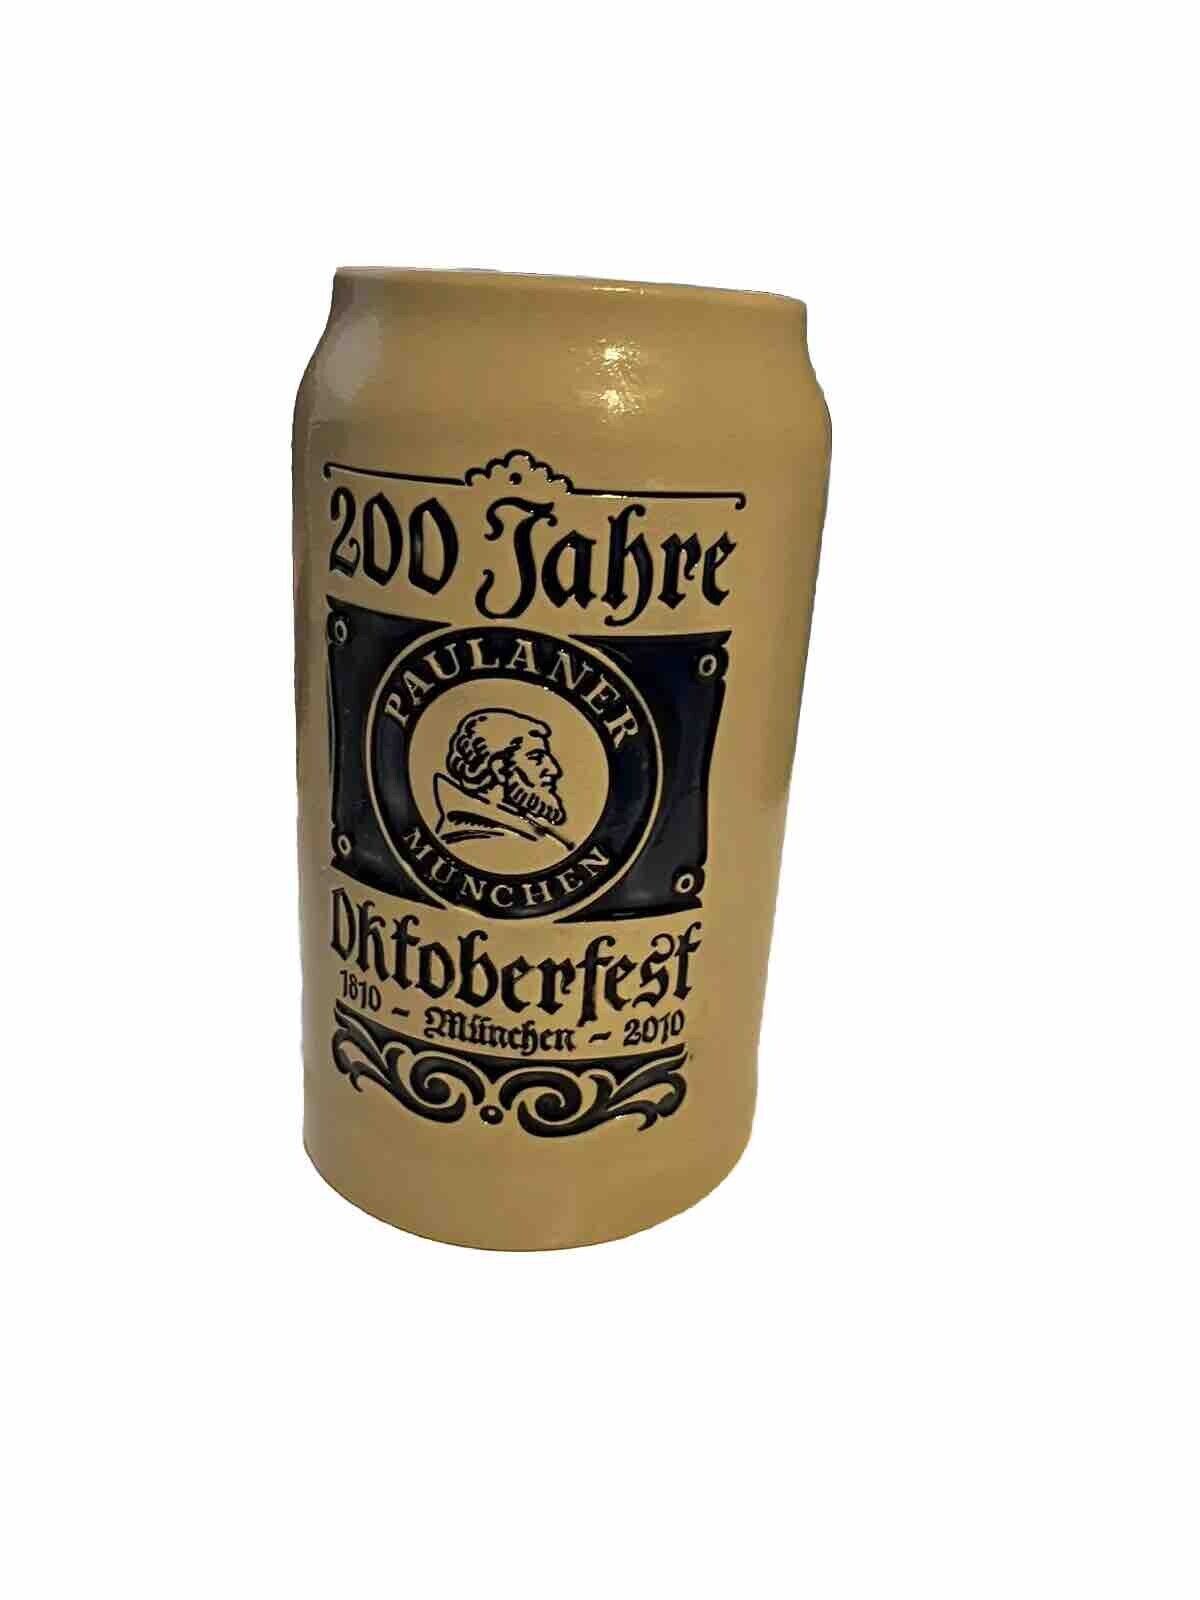 Official 2000 Oktoberfest Munich German Bavarian Beer Stein 1 Liter Collectible